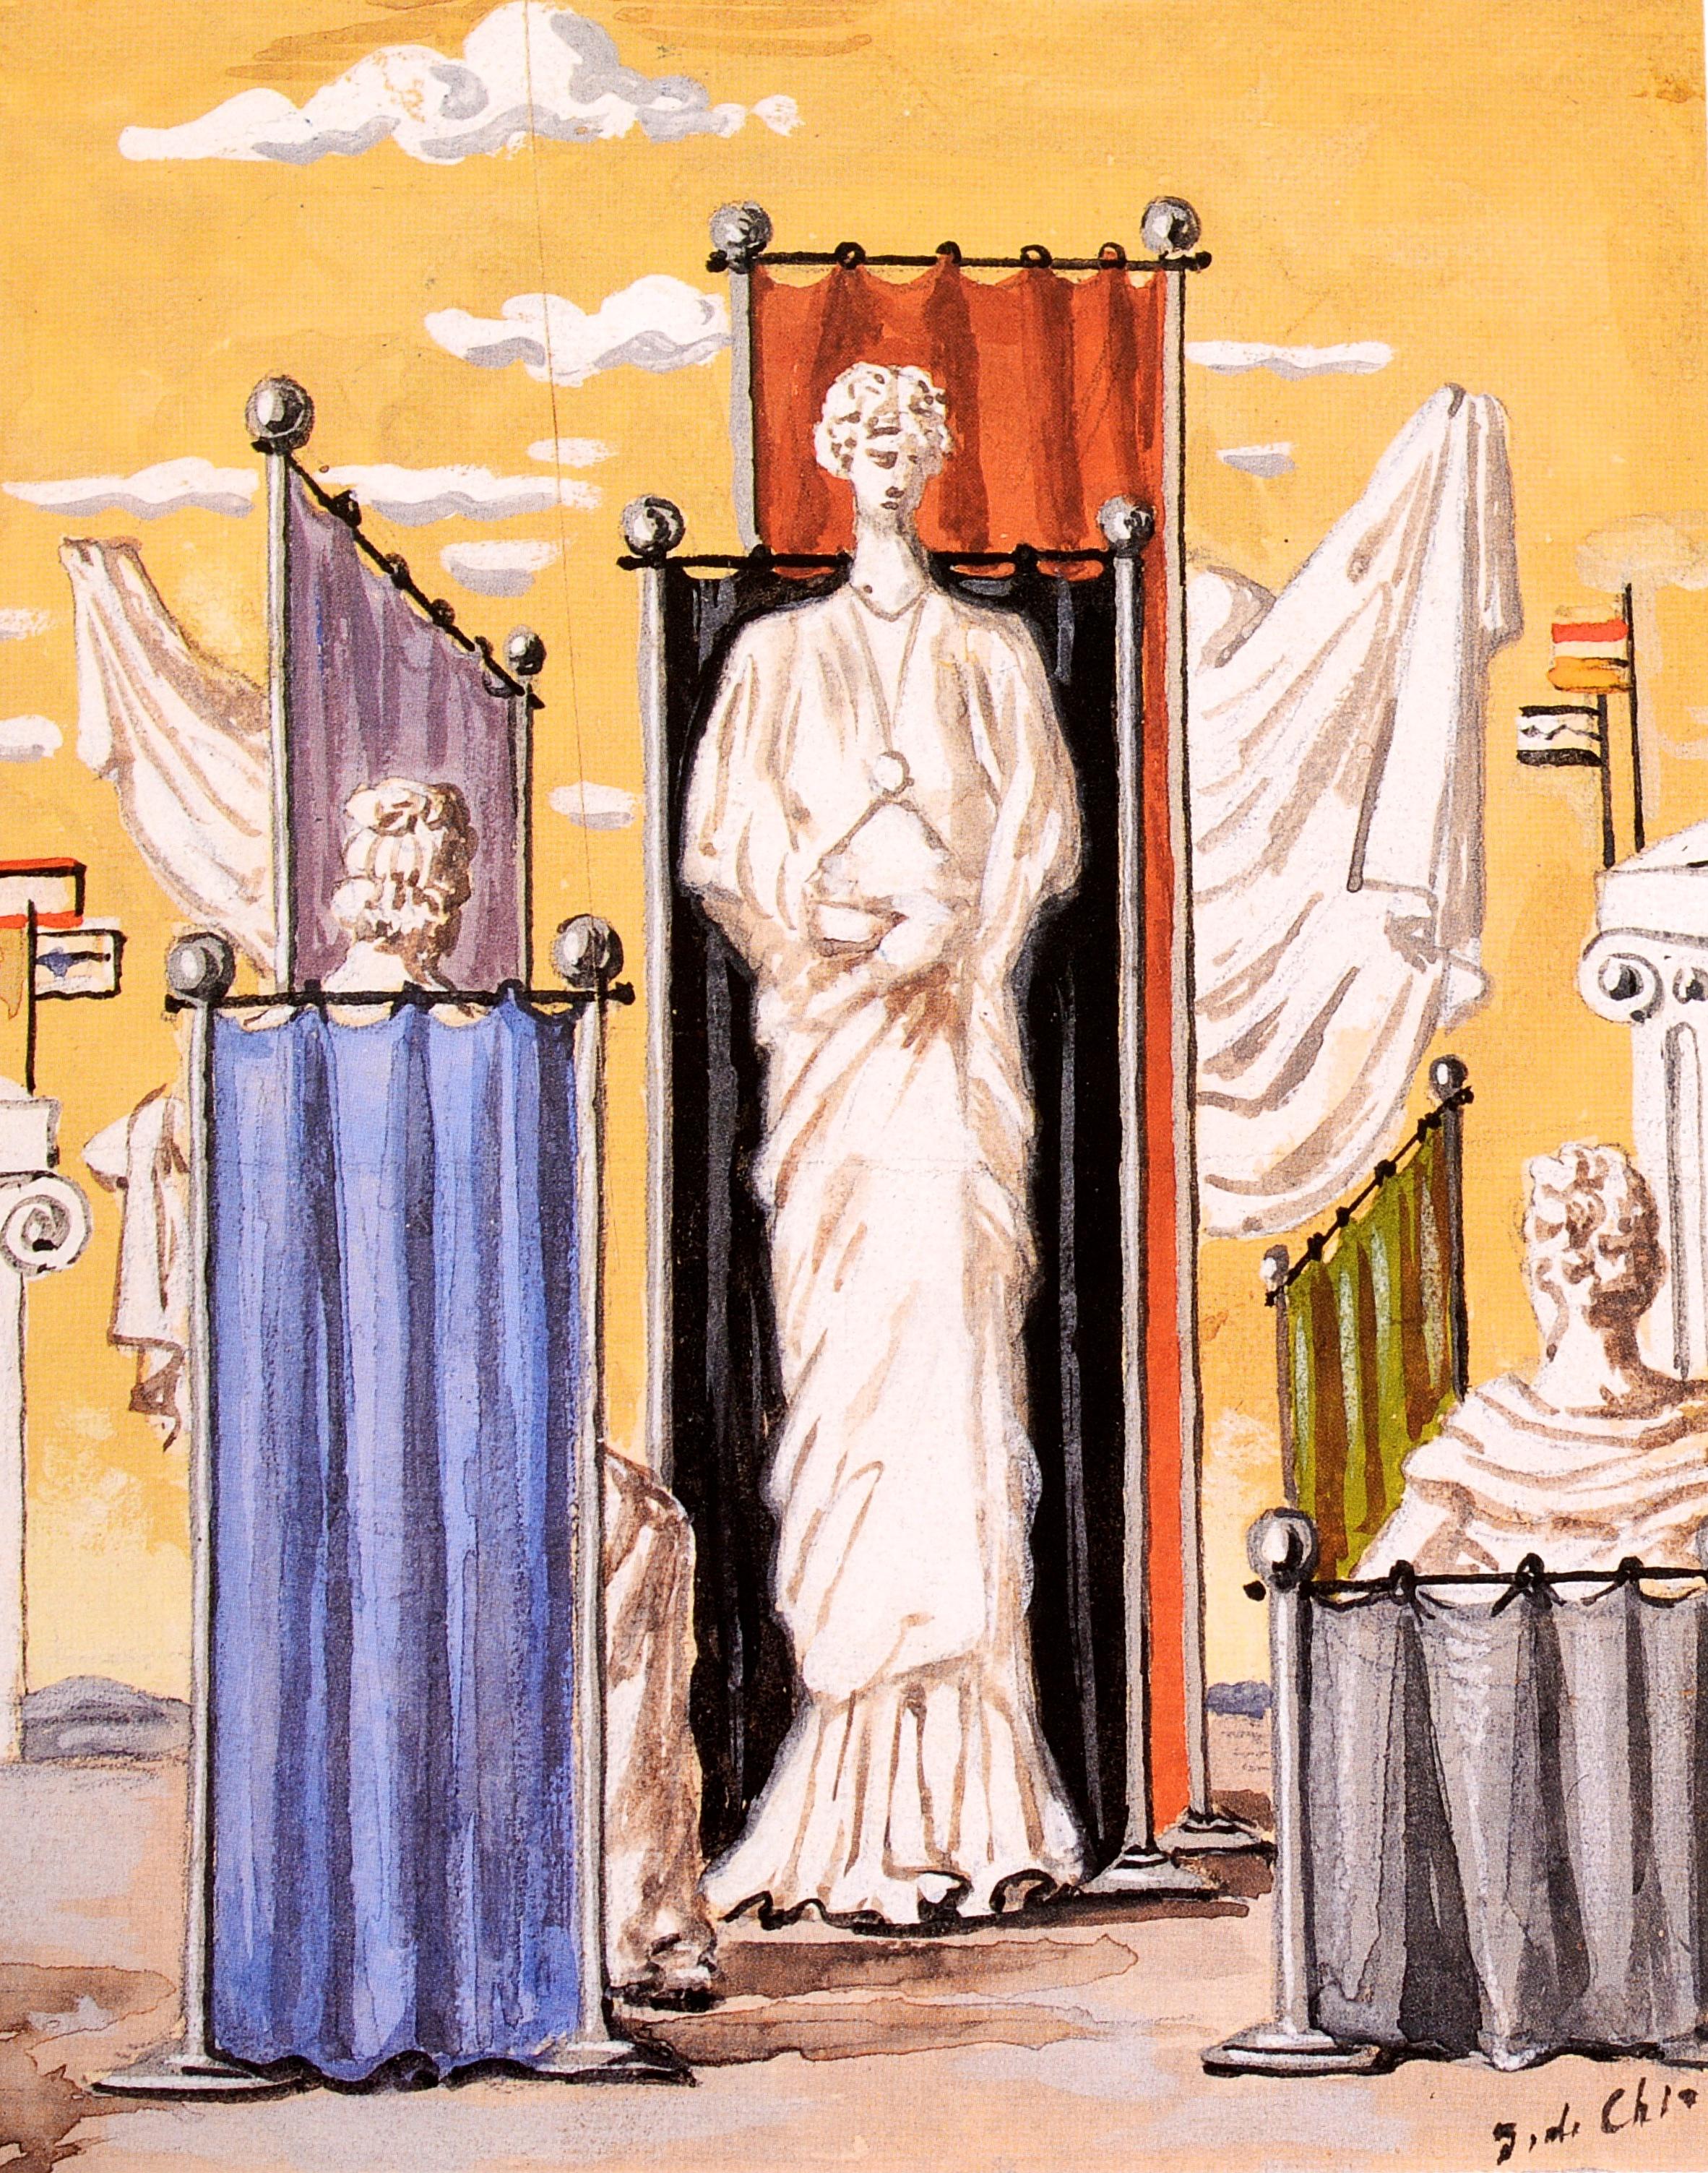 Fin du 20e siècle Art néo-romain et surréaliste de la collection de Pierre Le-Tan, Sotheby's en vente